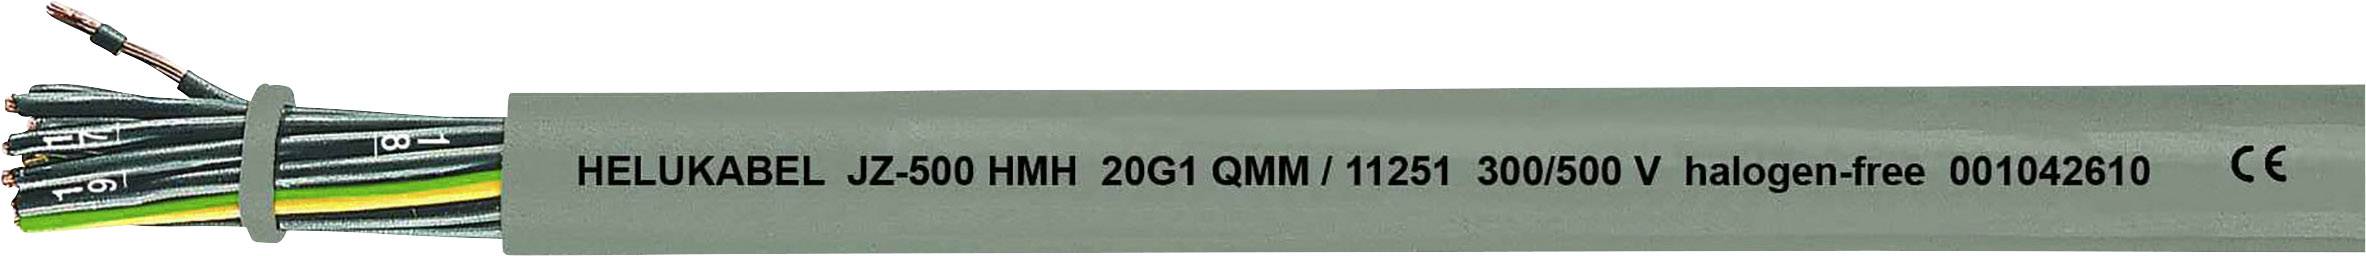 HELUKABEL JZ-500 HMH Steuerleitung 2 x 1 mm² Grau 11241-1000 1000 m